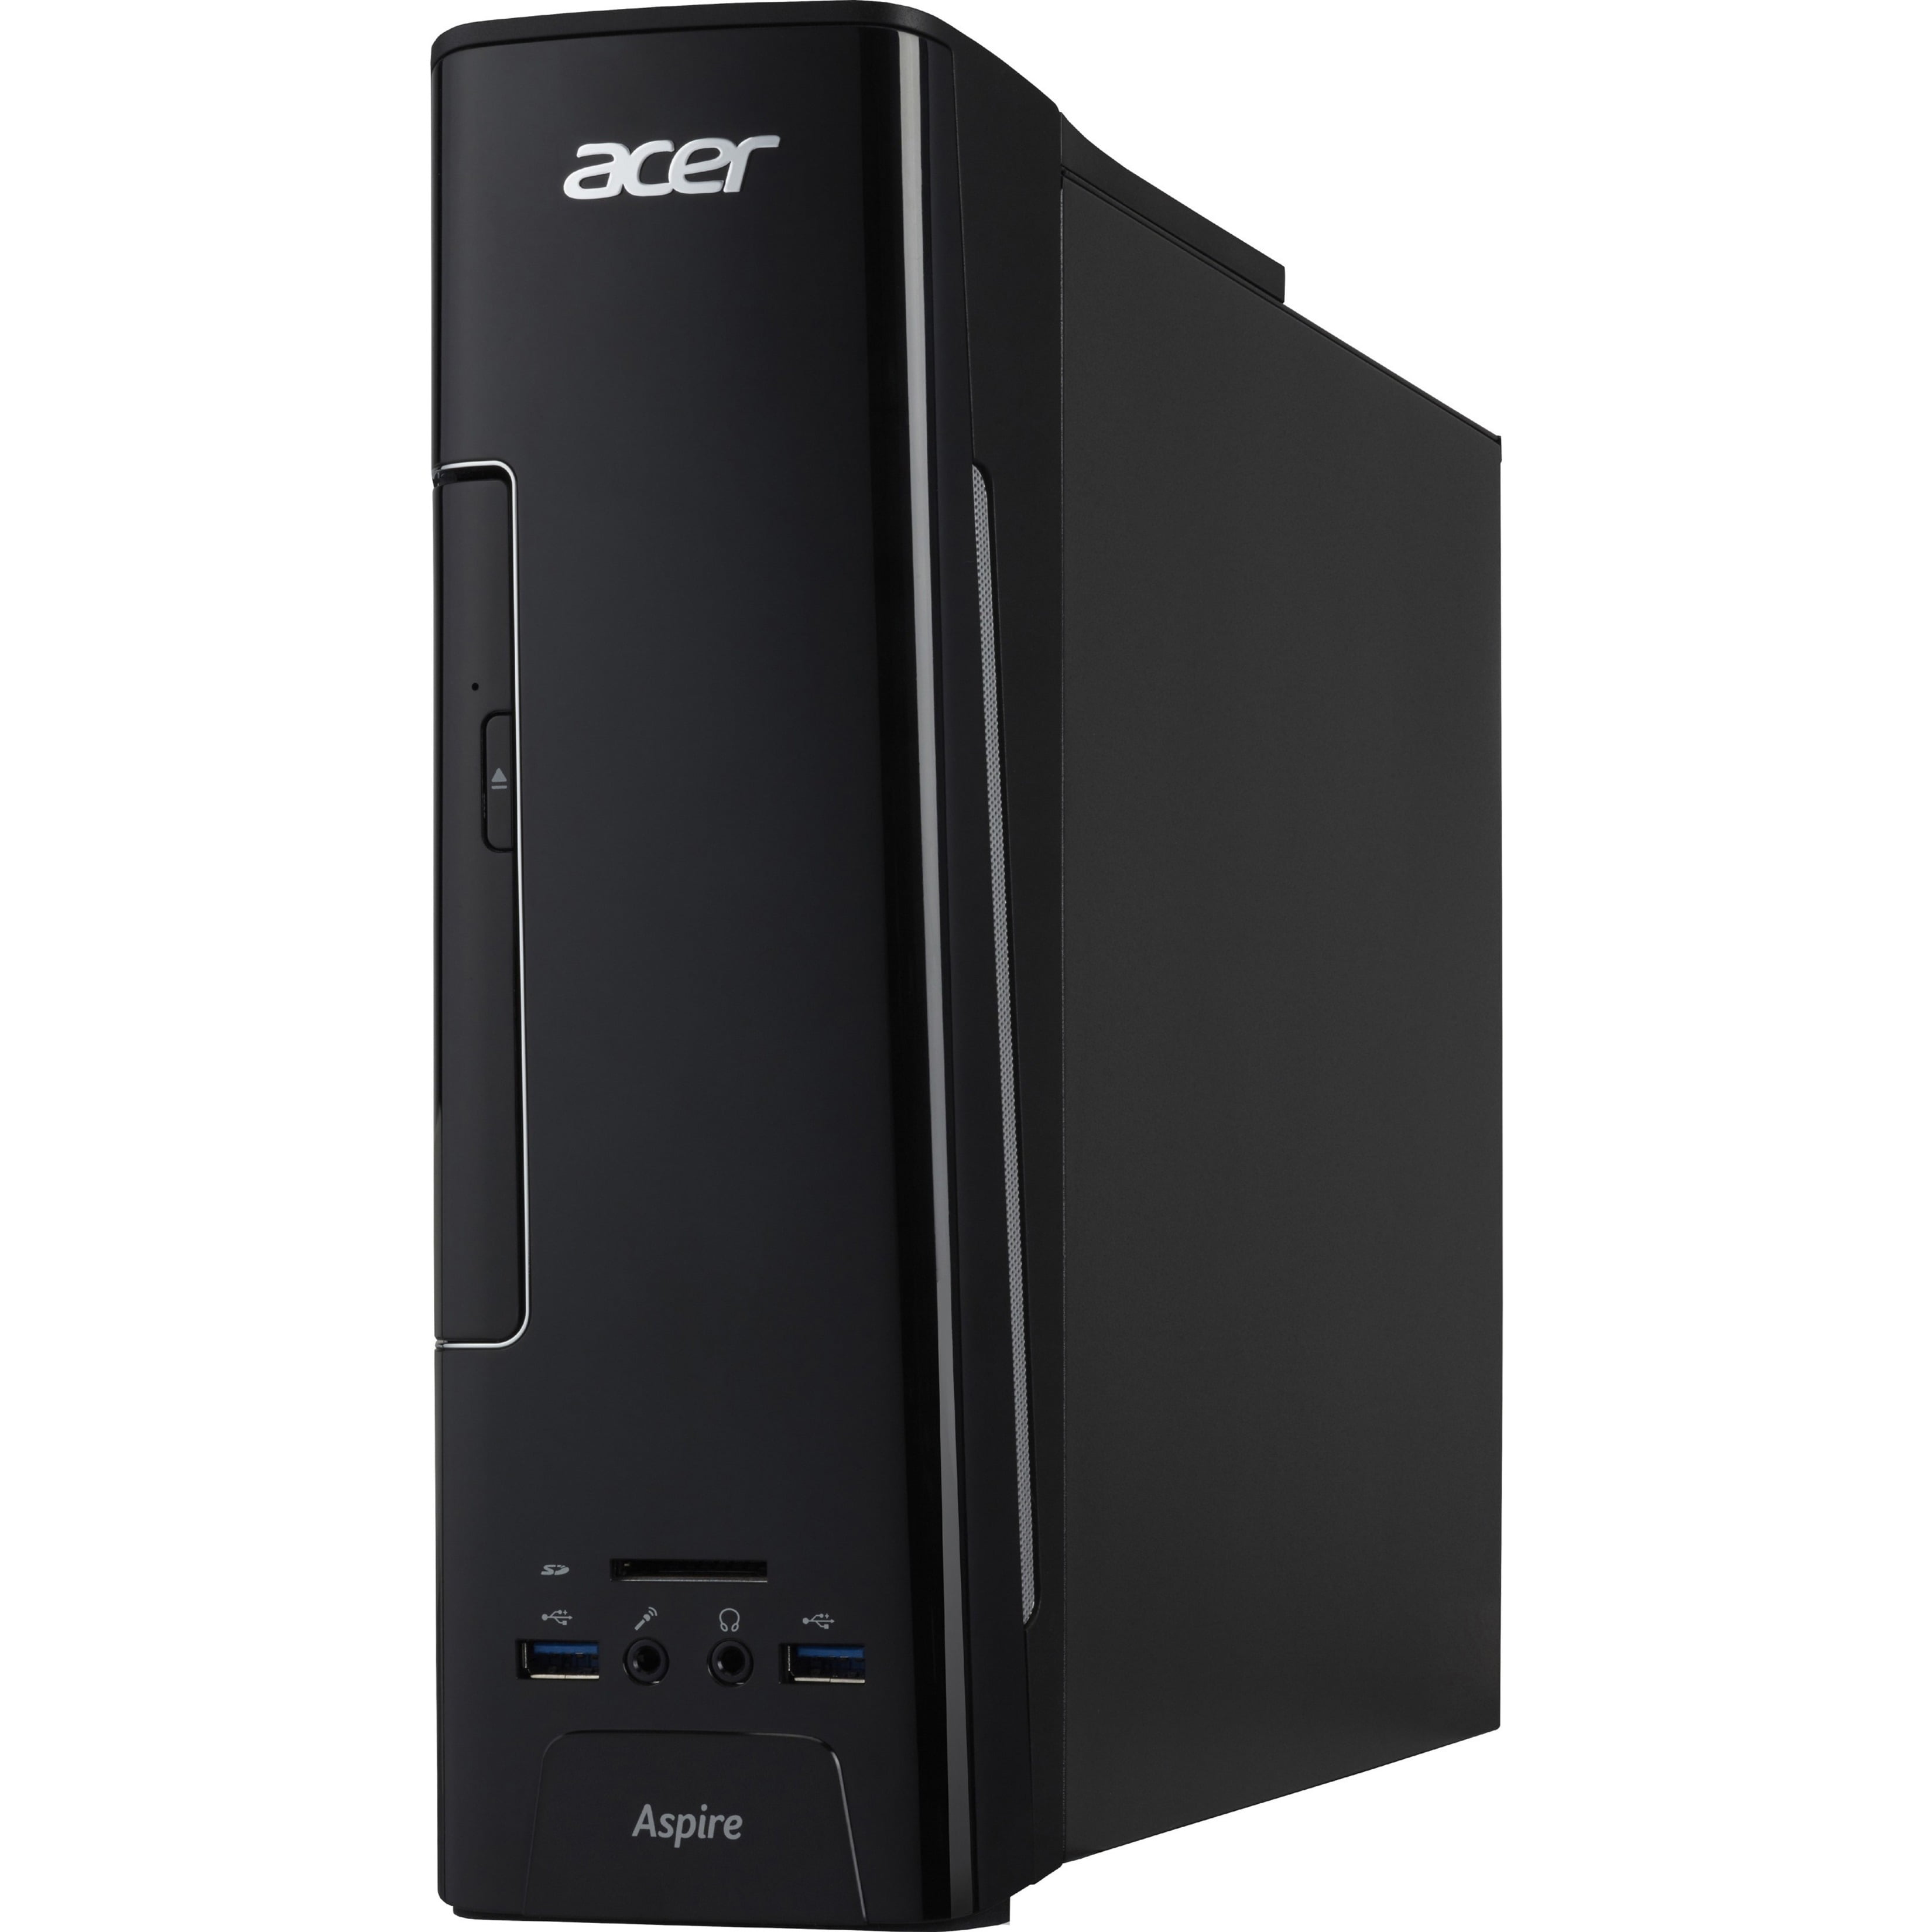 Acer Aspire AXC-780-UR1A - i5-7400 3 GHz - 8 GB DDR4 SDRAM - 1 TB HDD -  Windows 10 Home Desktop